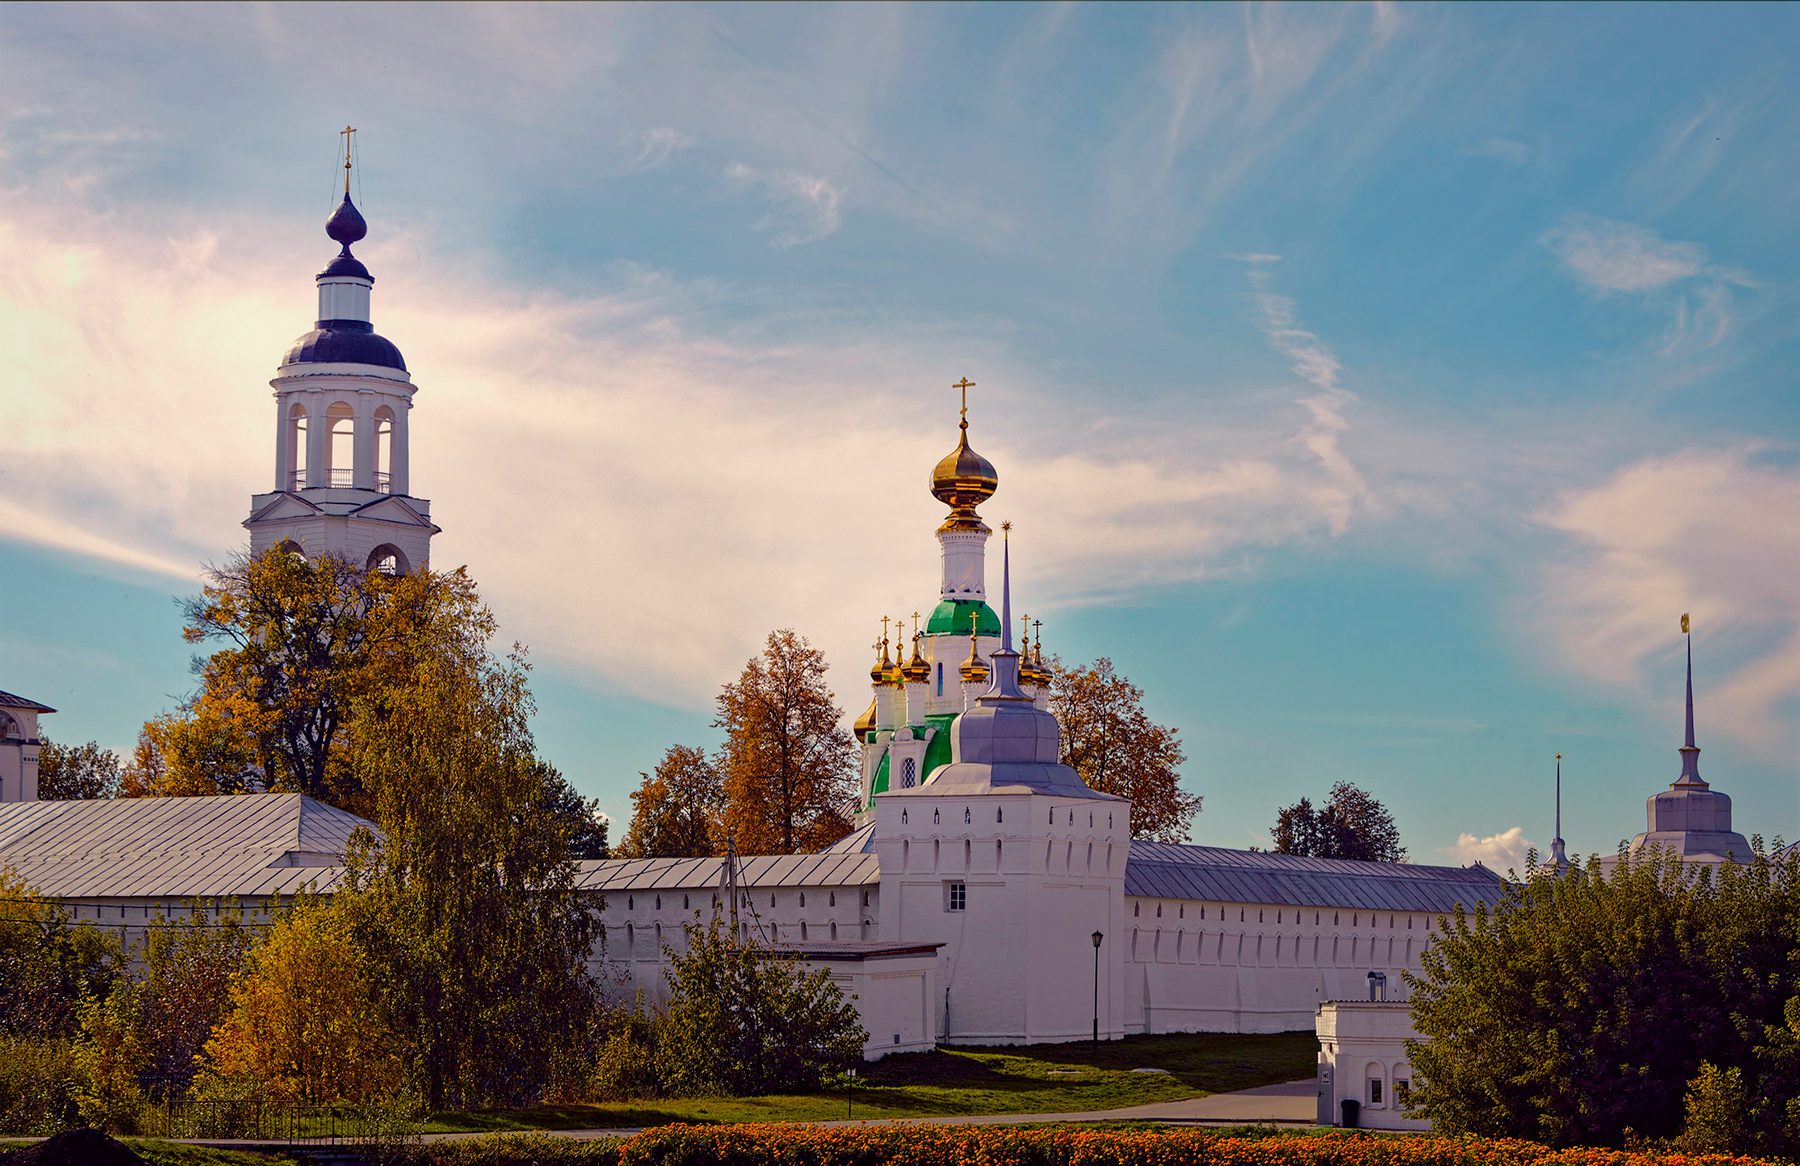 Толгский монастырь в Ярославле #1 Толга монастырь Ярославль 58kg